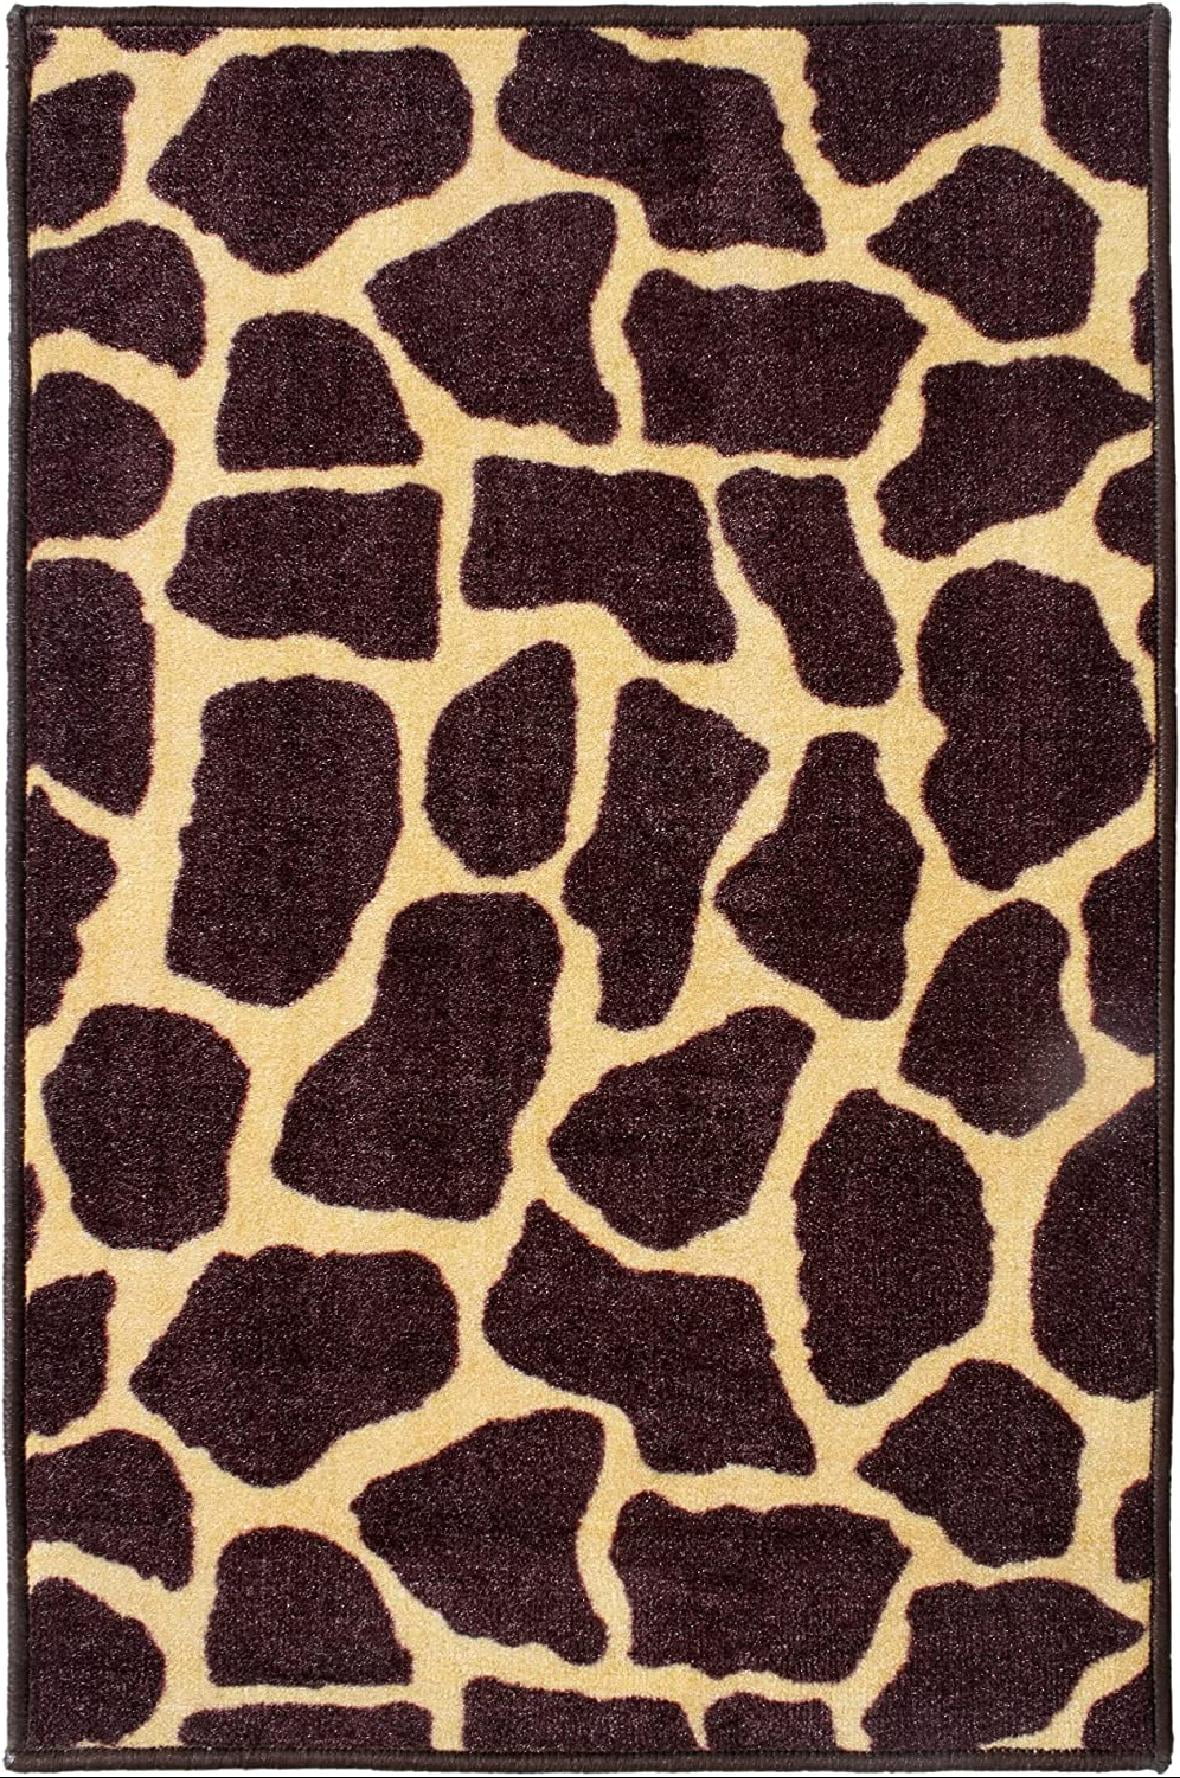 Animal Giraffe Nursery Rug Floor Carpet Yoga Mat 1.7 x 2.6 ft Naanle Hippie Giraffe Funny Animal Non Slip Area Rug for Living Dinning Room Bedroom Kitchen 50 x 80 cm 